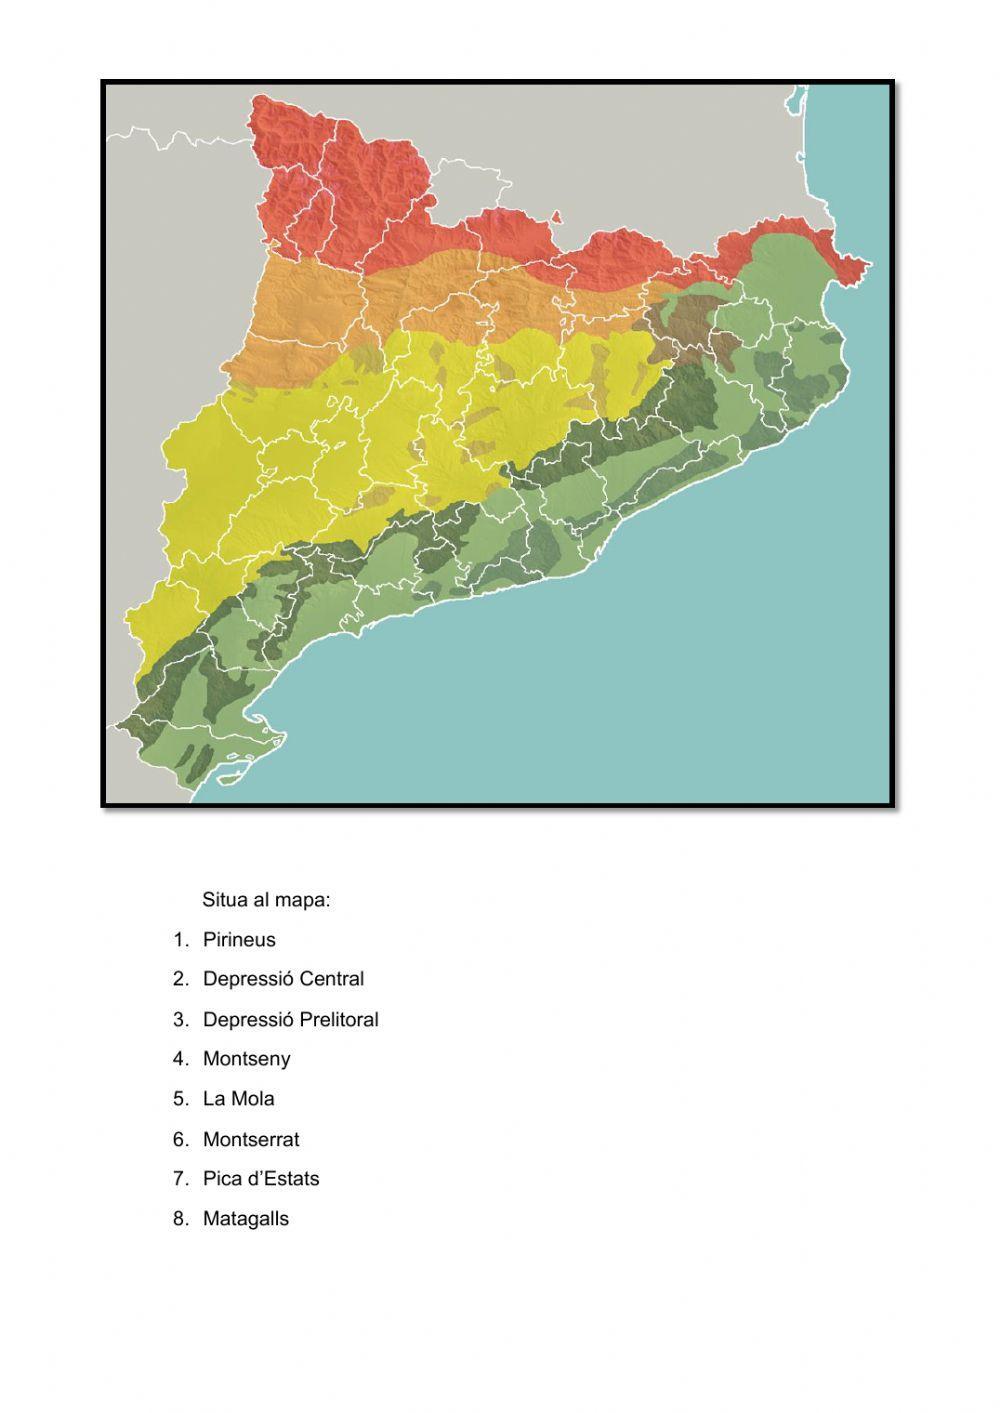 Situa al mapa de Catalunya